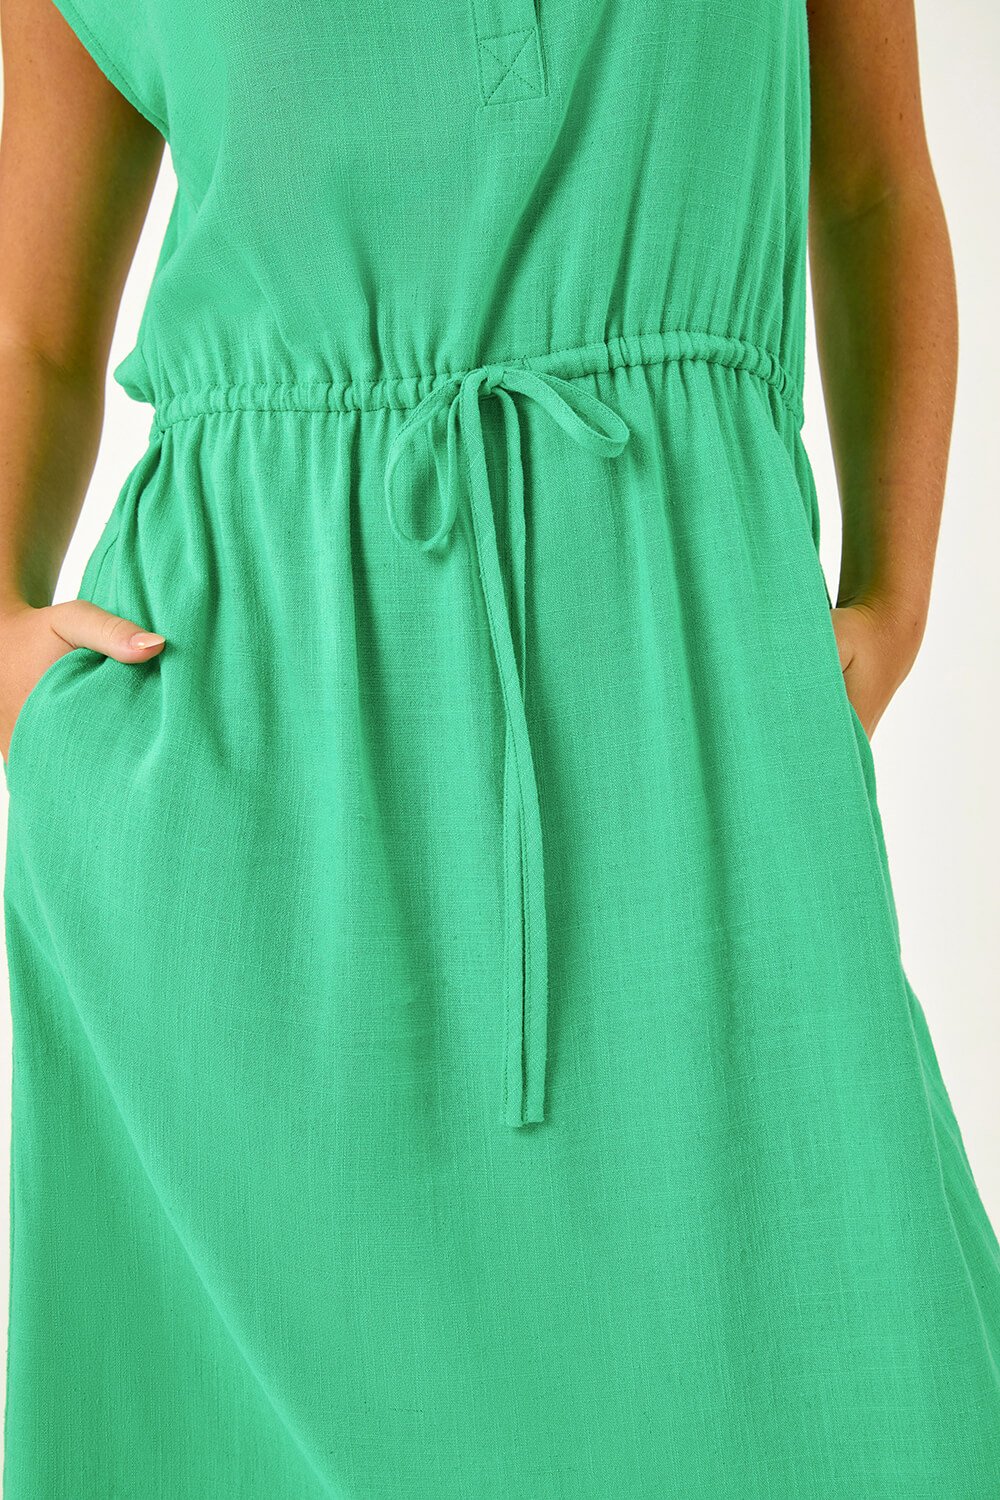 Green Petite Button Detail Tie Waist Shirt Dress, Image 5 of 5